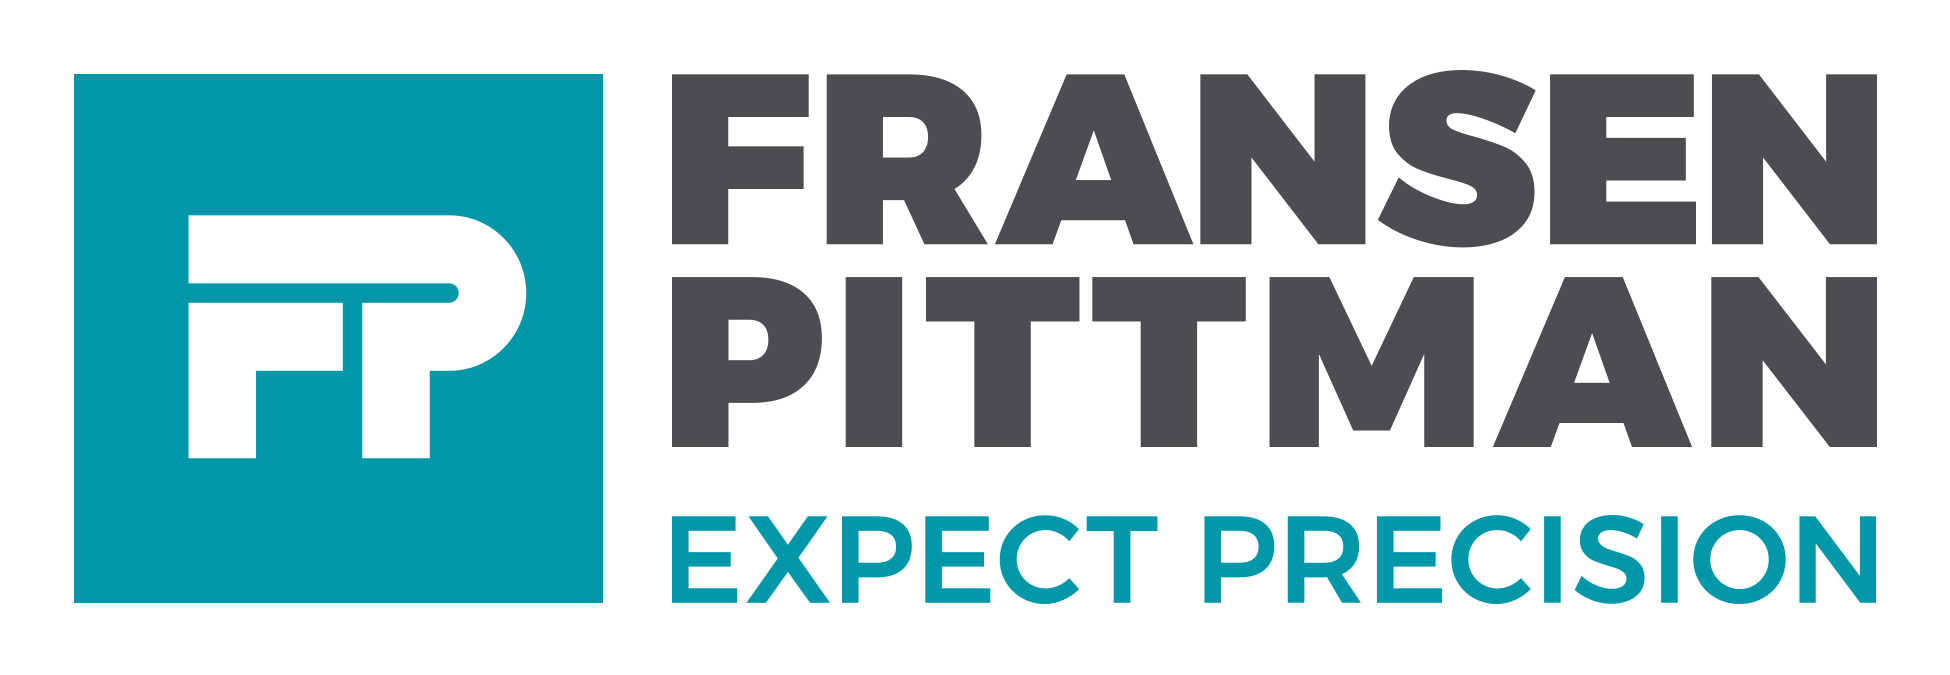 Fransen Pittman General Contractors Company Logo